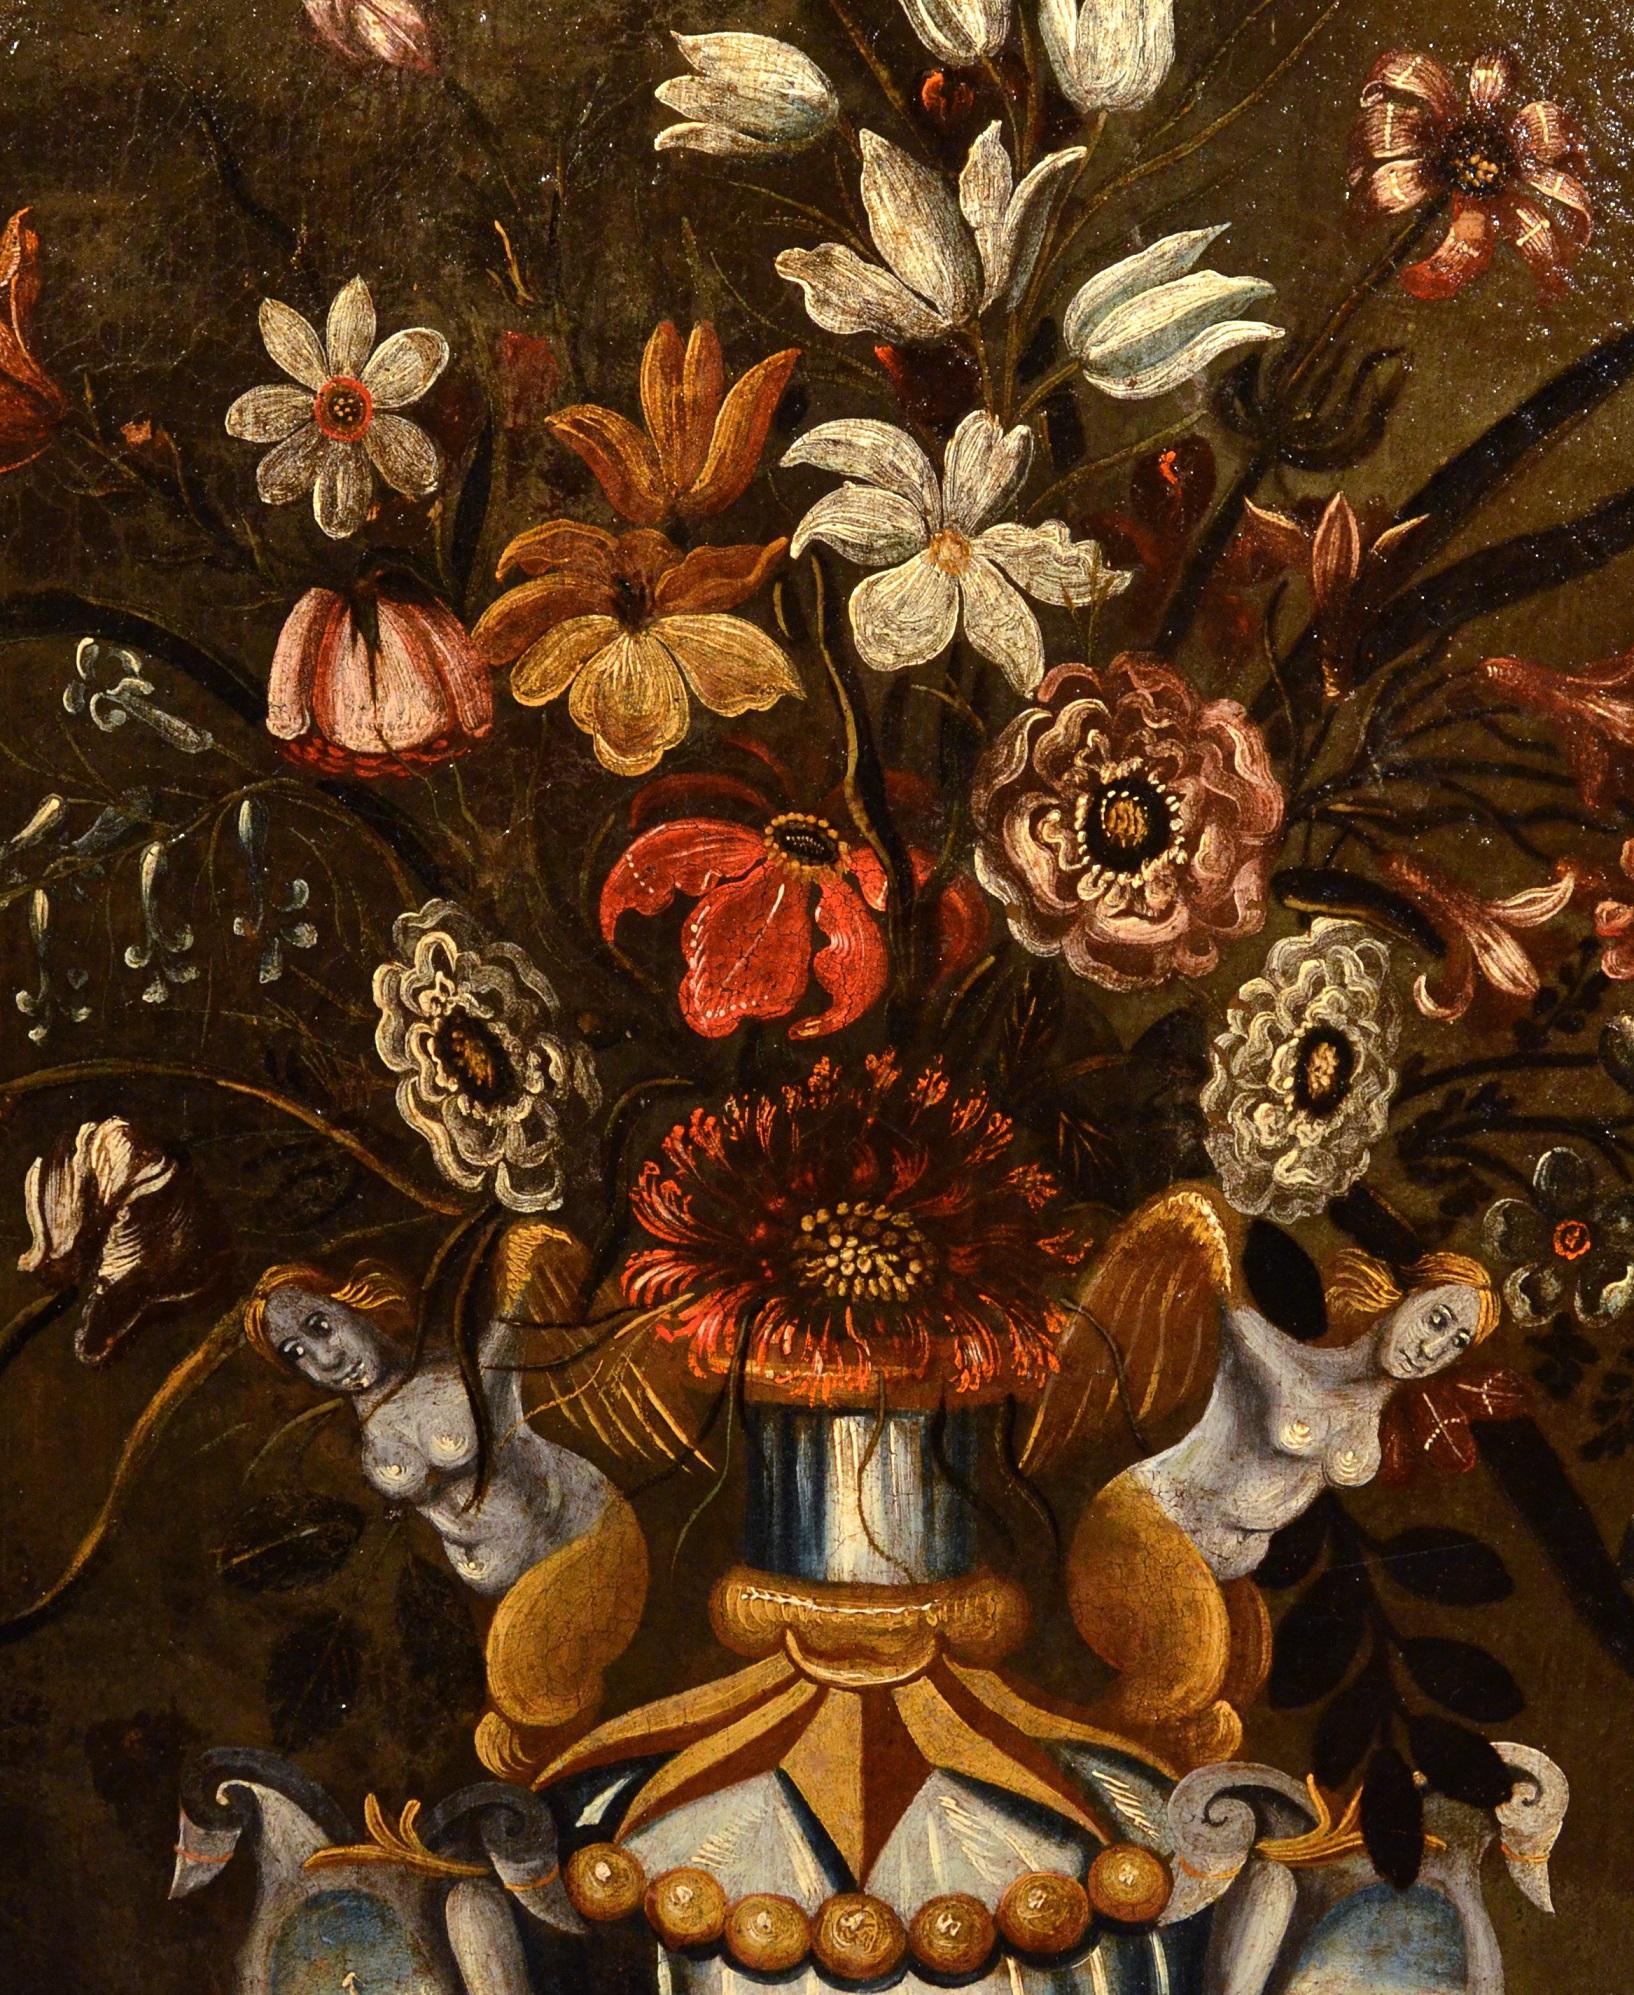 Meister der grotesken Vase (tätig in Rom und Neapel im ersten Viertel des 17. Jahrhunderts)
Blumenstillleben in einer klassischen Vase

Öl auf Leinwand
66 x 51 cm, Im Rahmen cm. 82 x 68

In diesem prächtigen Stillleben sehen wir eine kostbare